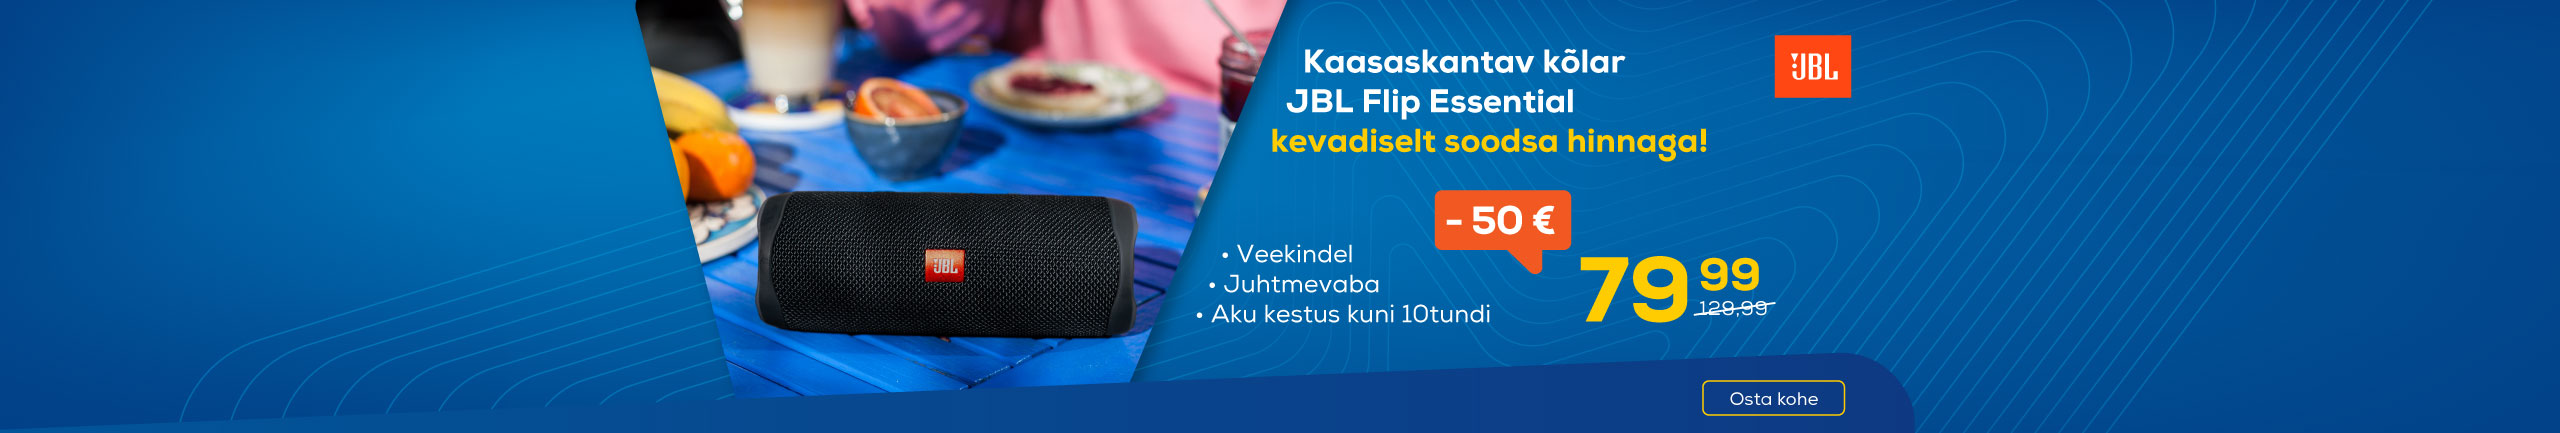 Kaasaskantav kõlar JBL Flip Essential kevadiselt soodsa hinnaga!